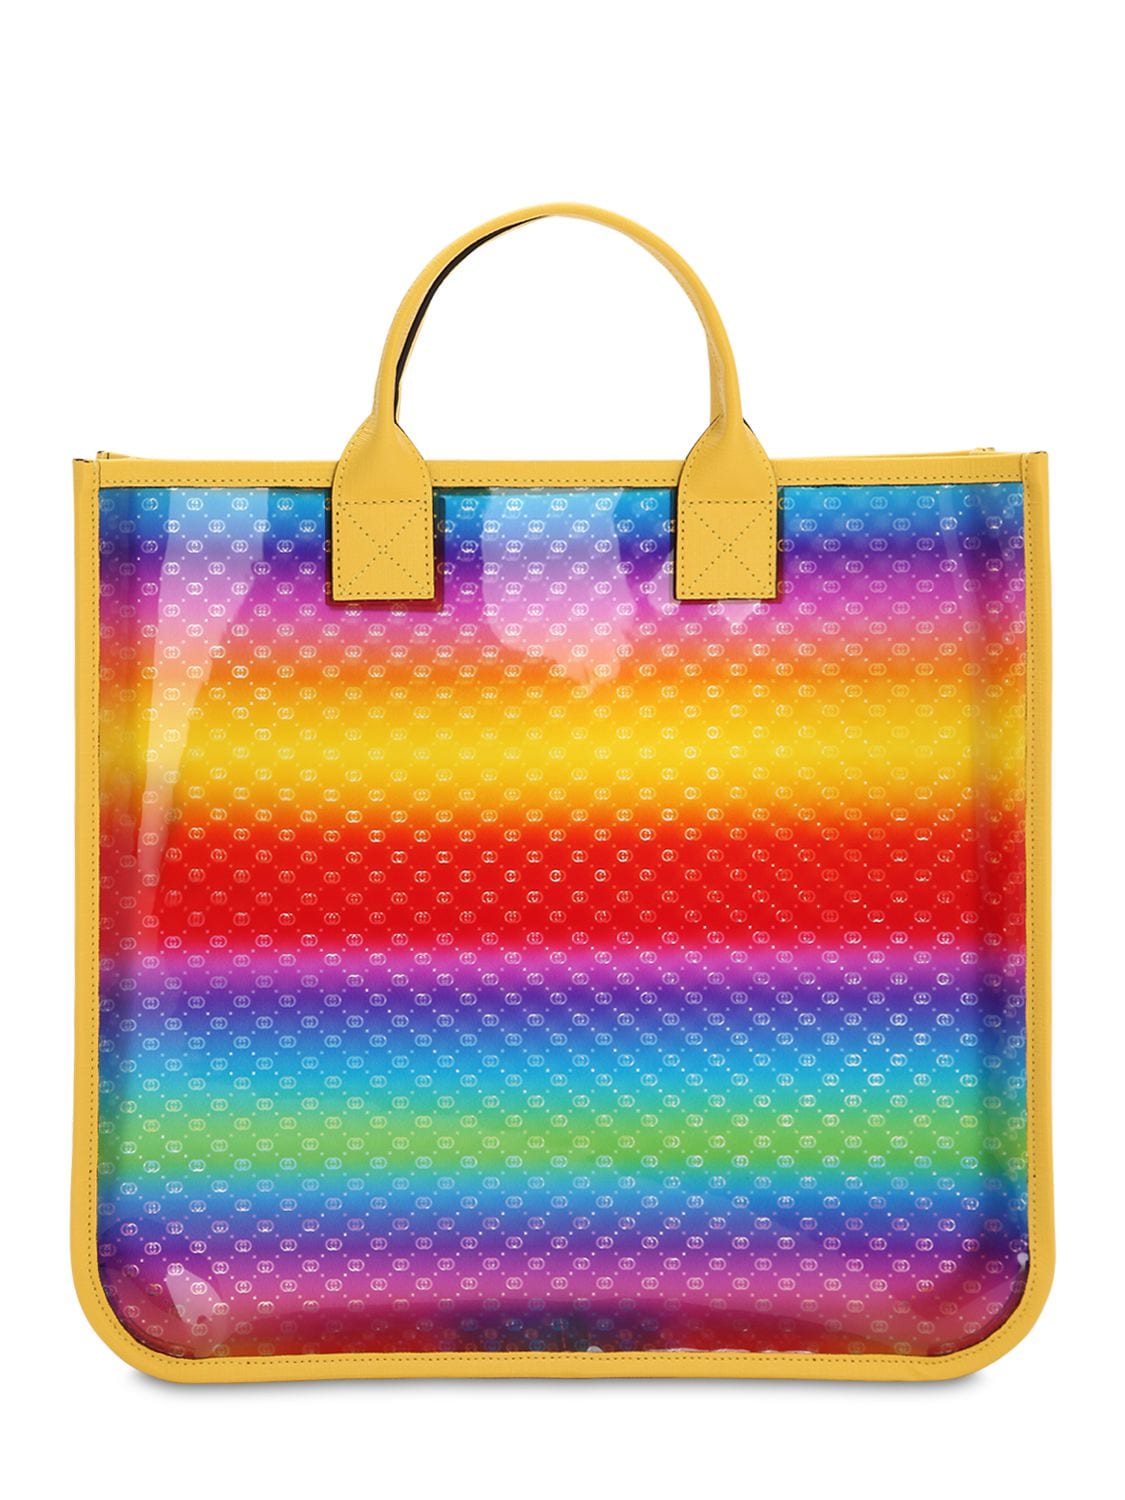 Gucci Kids' Pvc Tote Bag In Multicolor